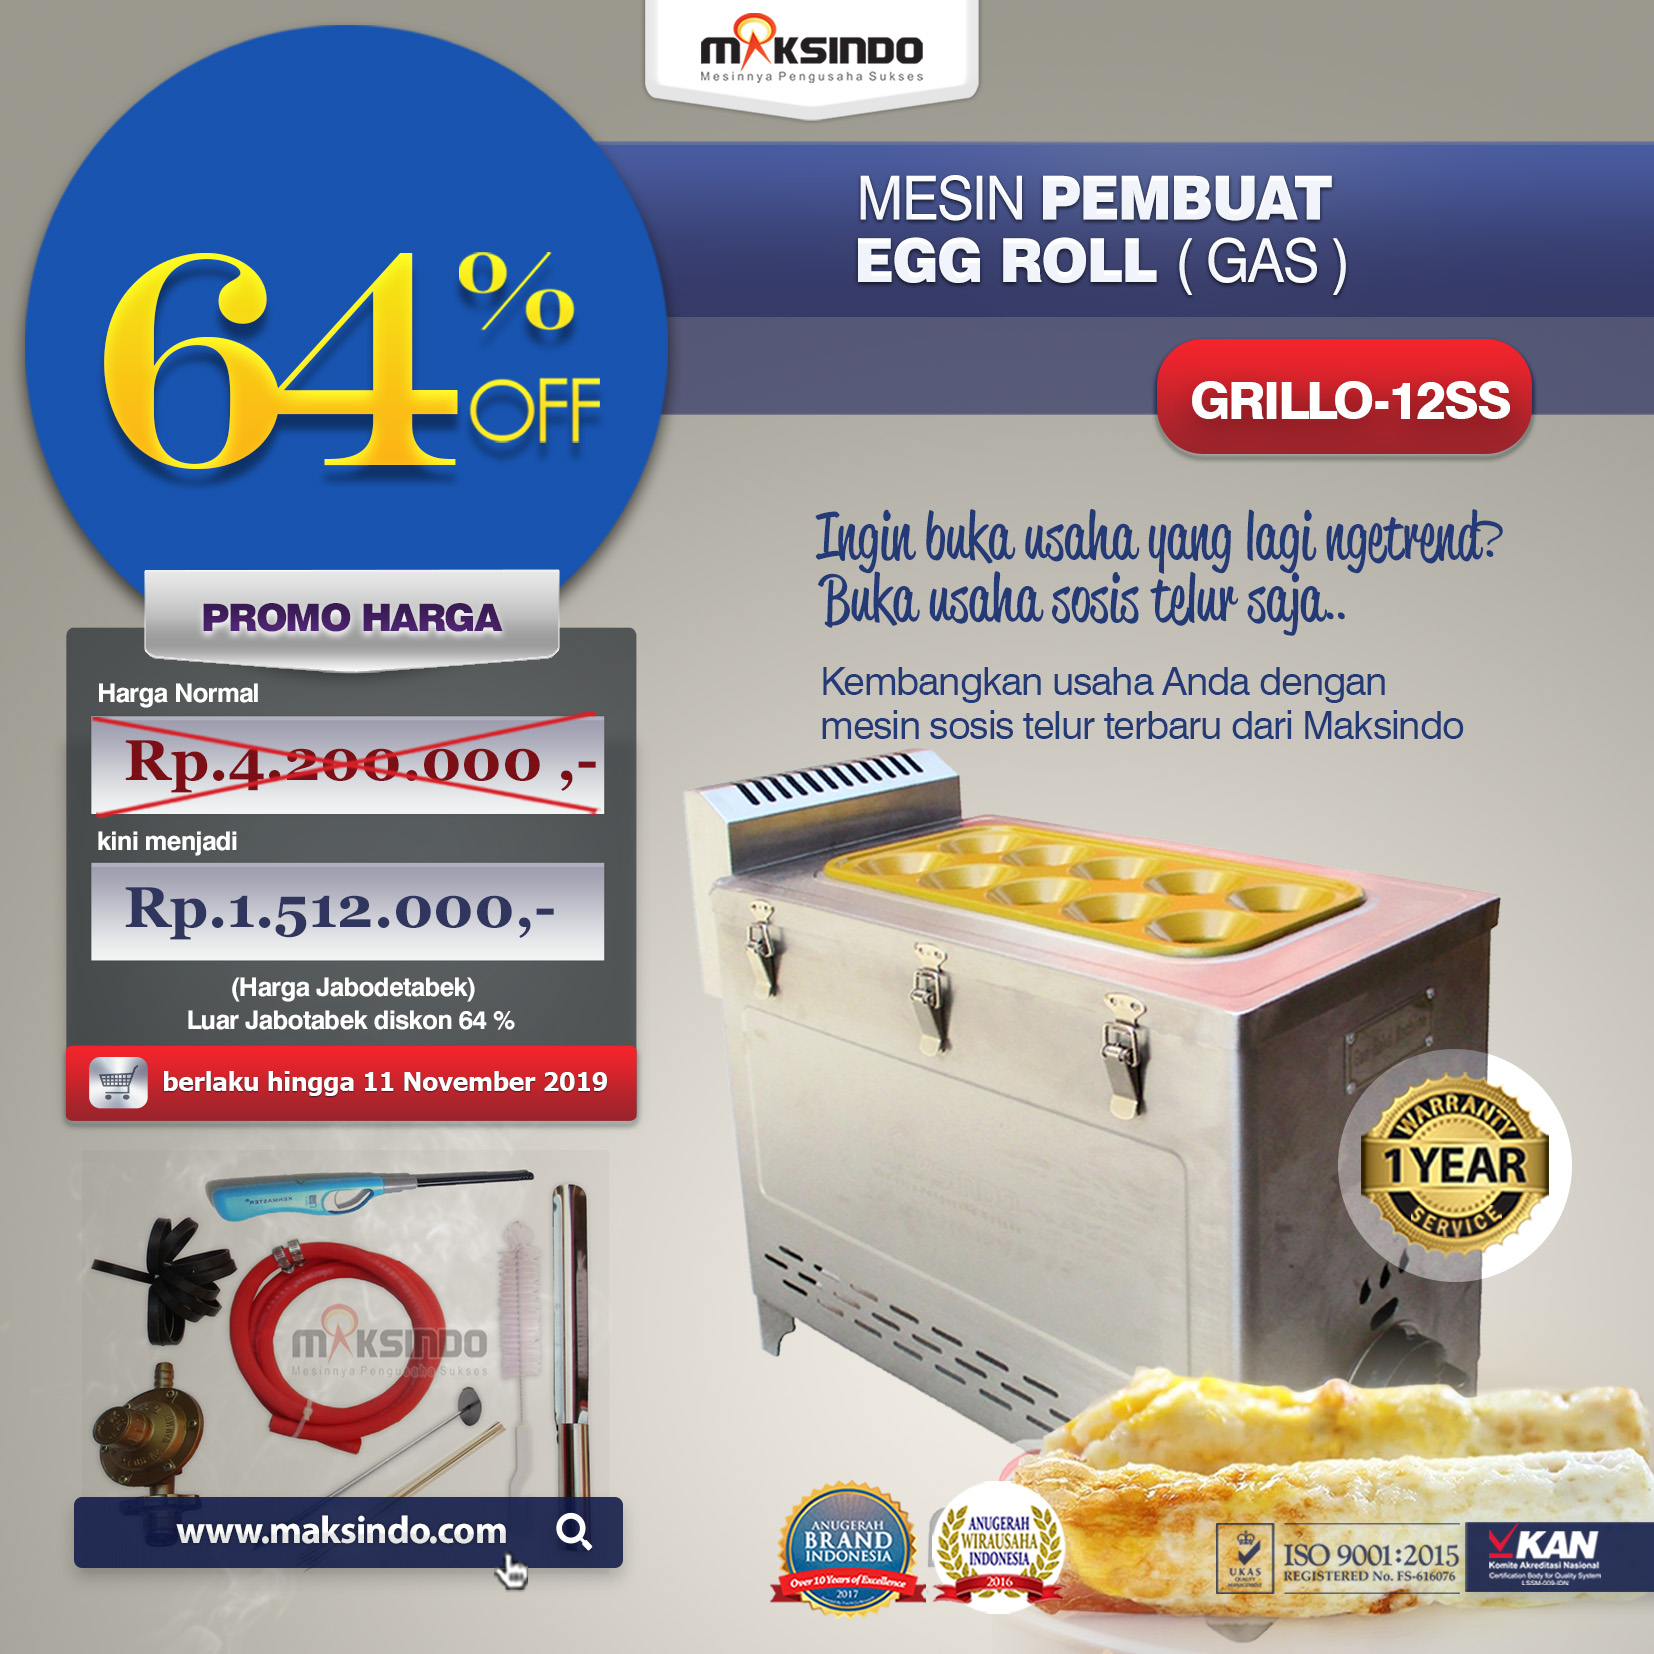 Jual Mesin Pembuat Egg Roll (Gas) GRILLO-12SS di Pekanbaru